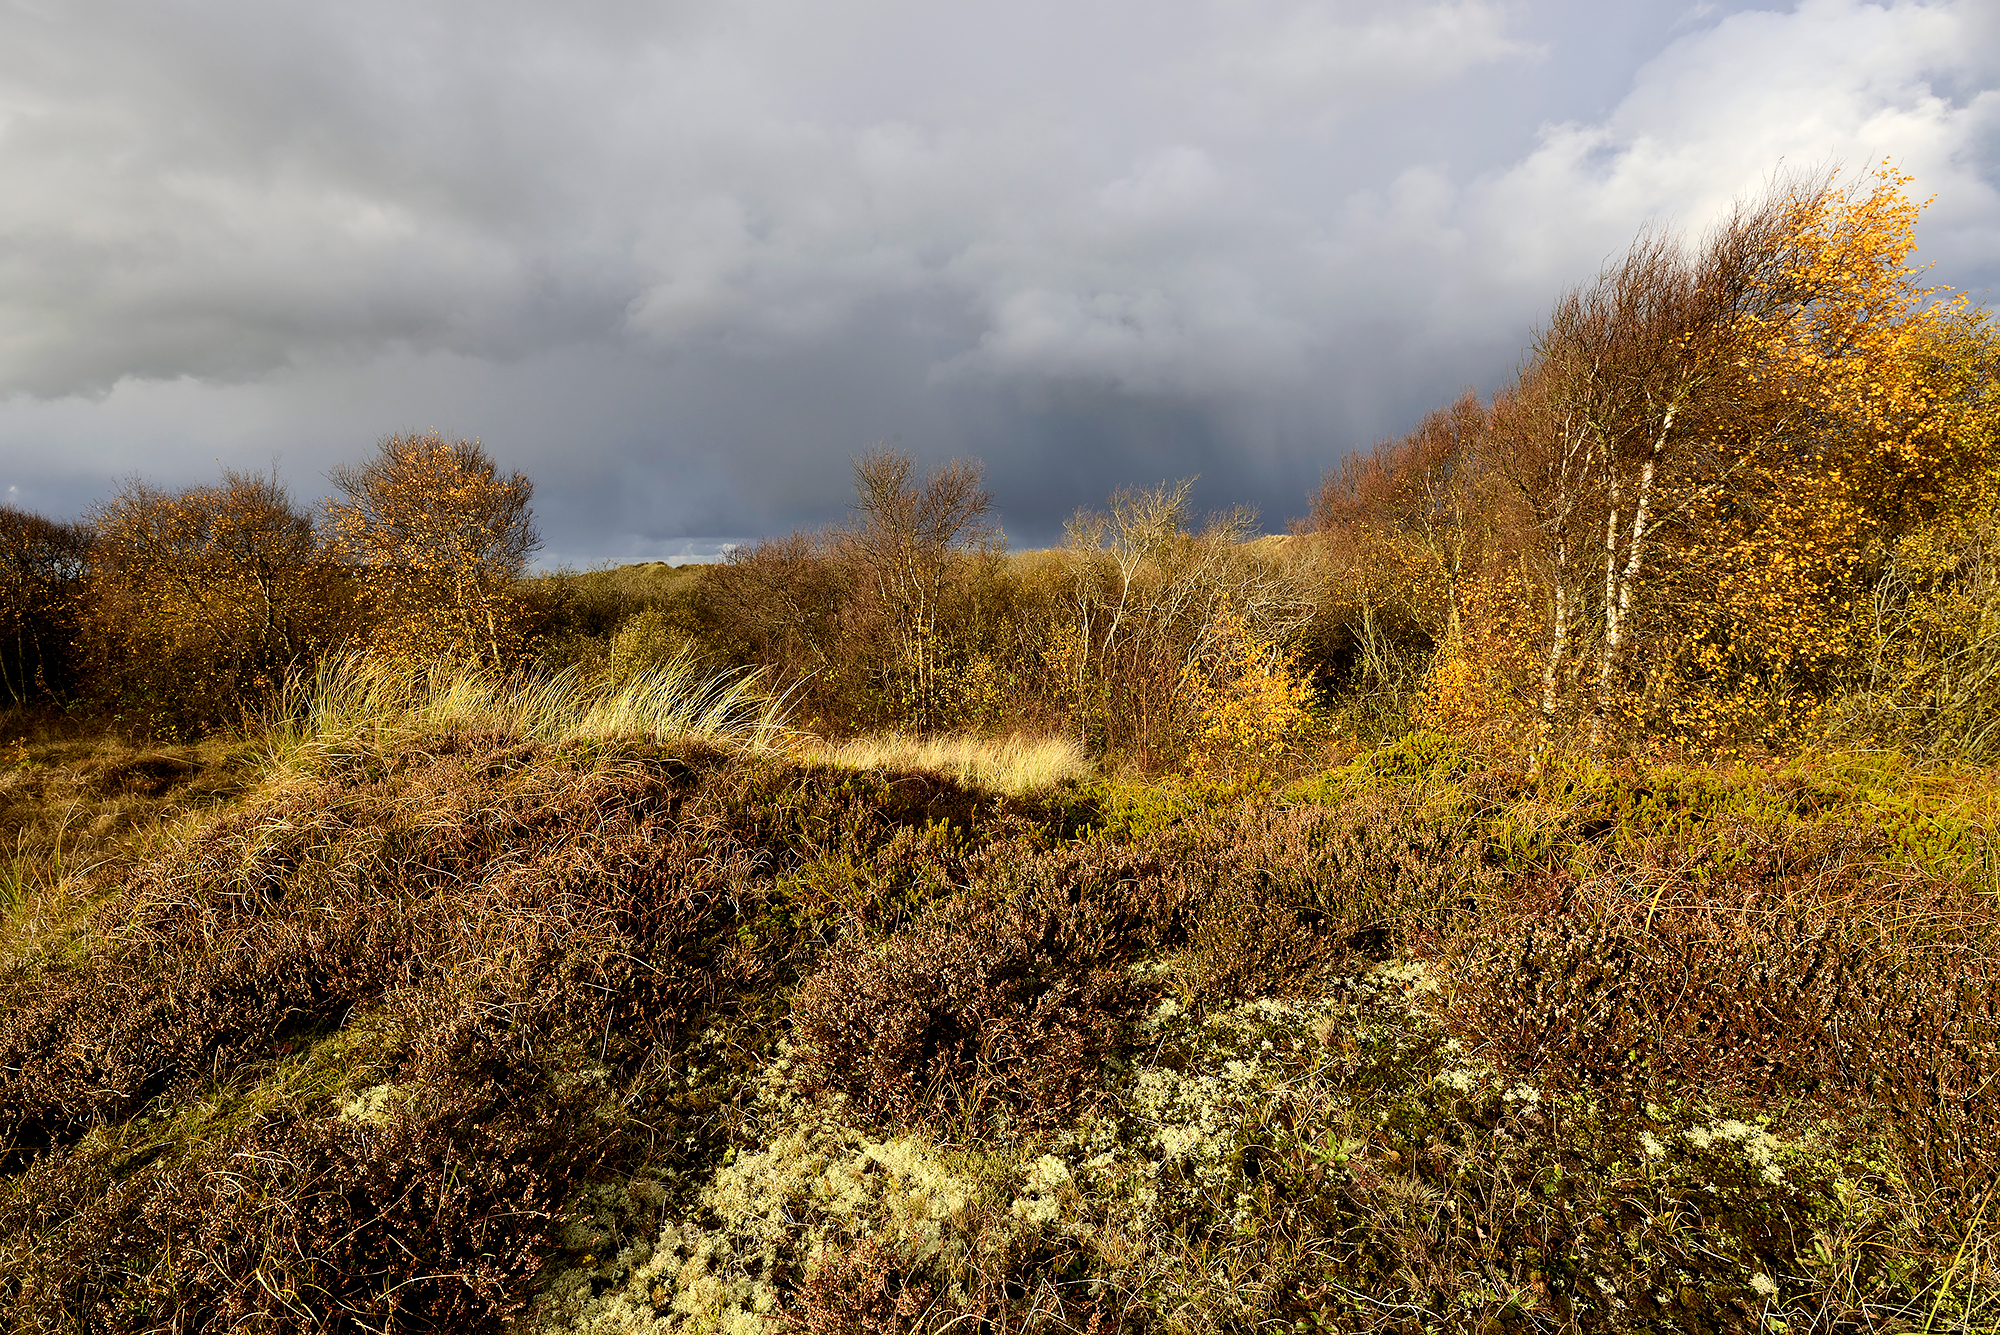 Wolkenlucht en regenbui boven mos, struiken heide en berkenbosje tijdens herfst in de duinen bij Petten.